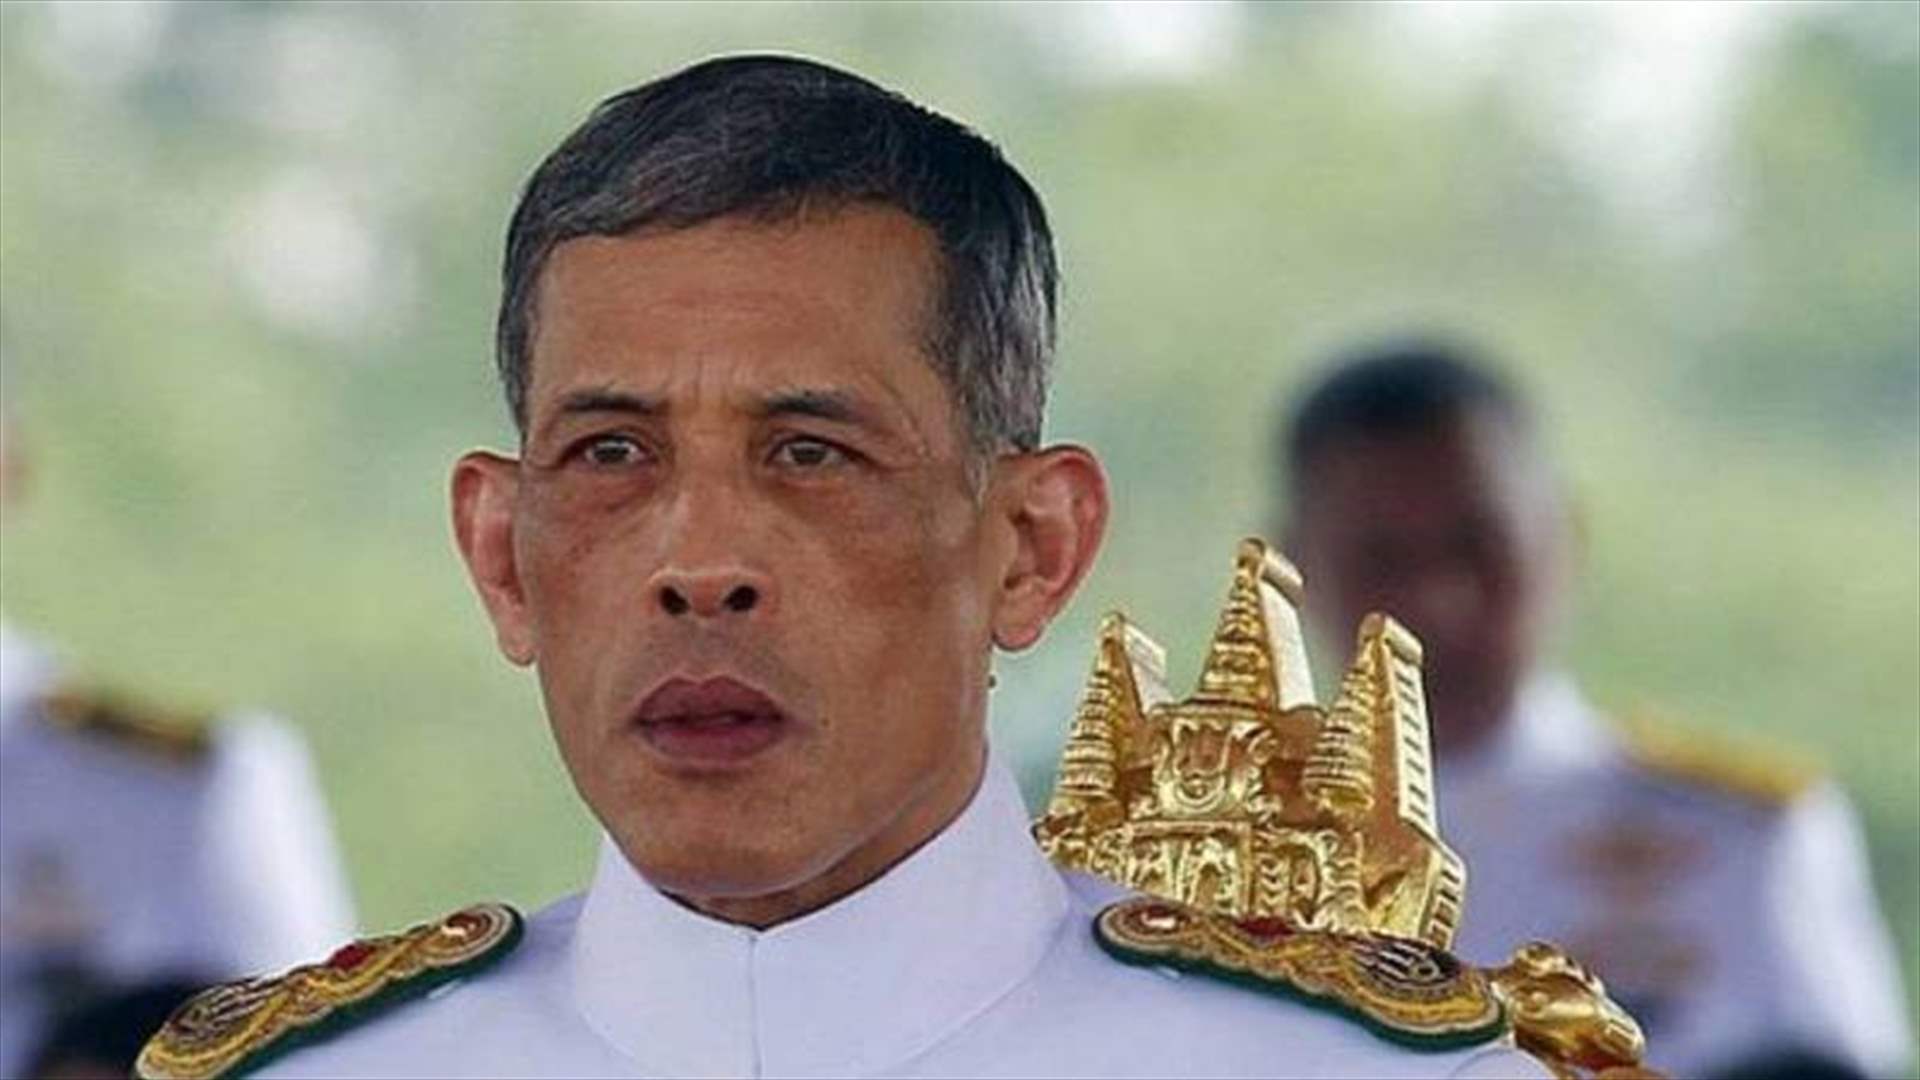 ملك تايلاند يصادق على تشكيلة الحكومة الجديدة